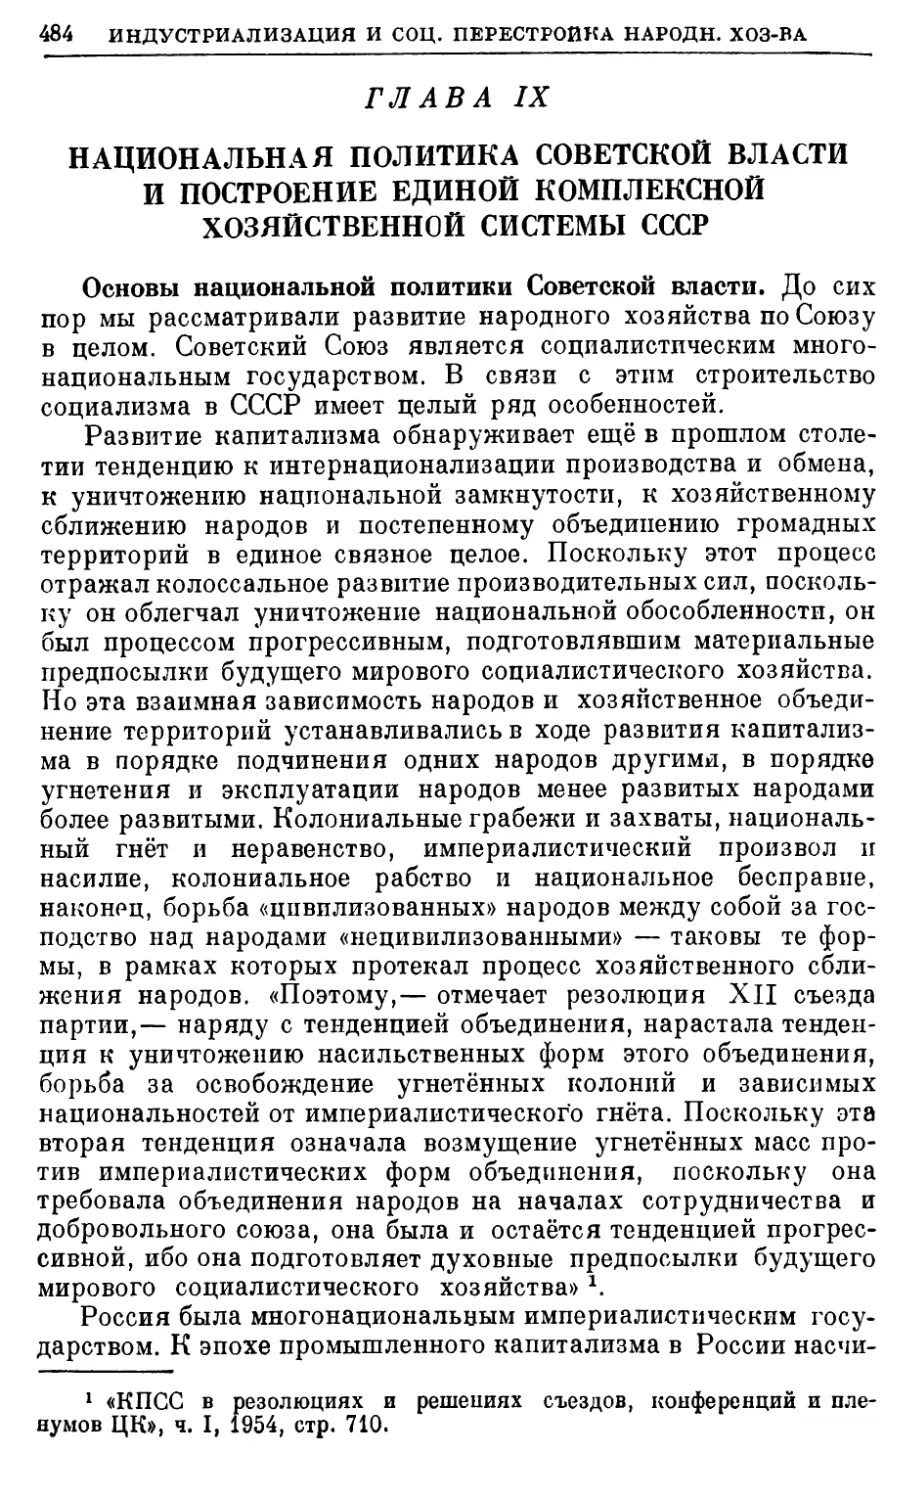 Глава IX. Национальная политика Советской власти и построение единой комплексной хозяйственной системы СССР